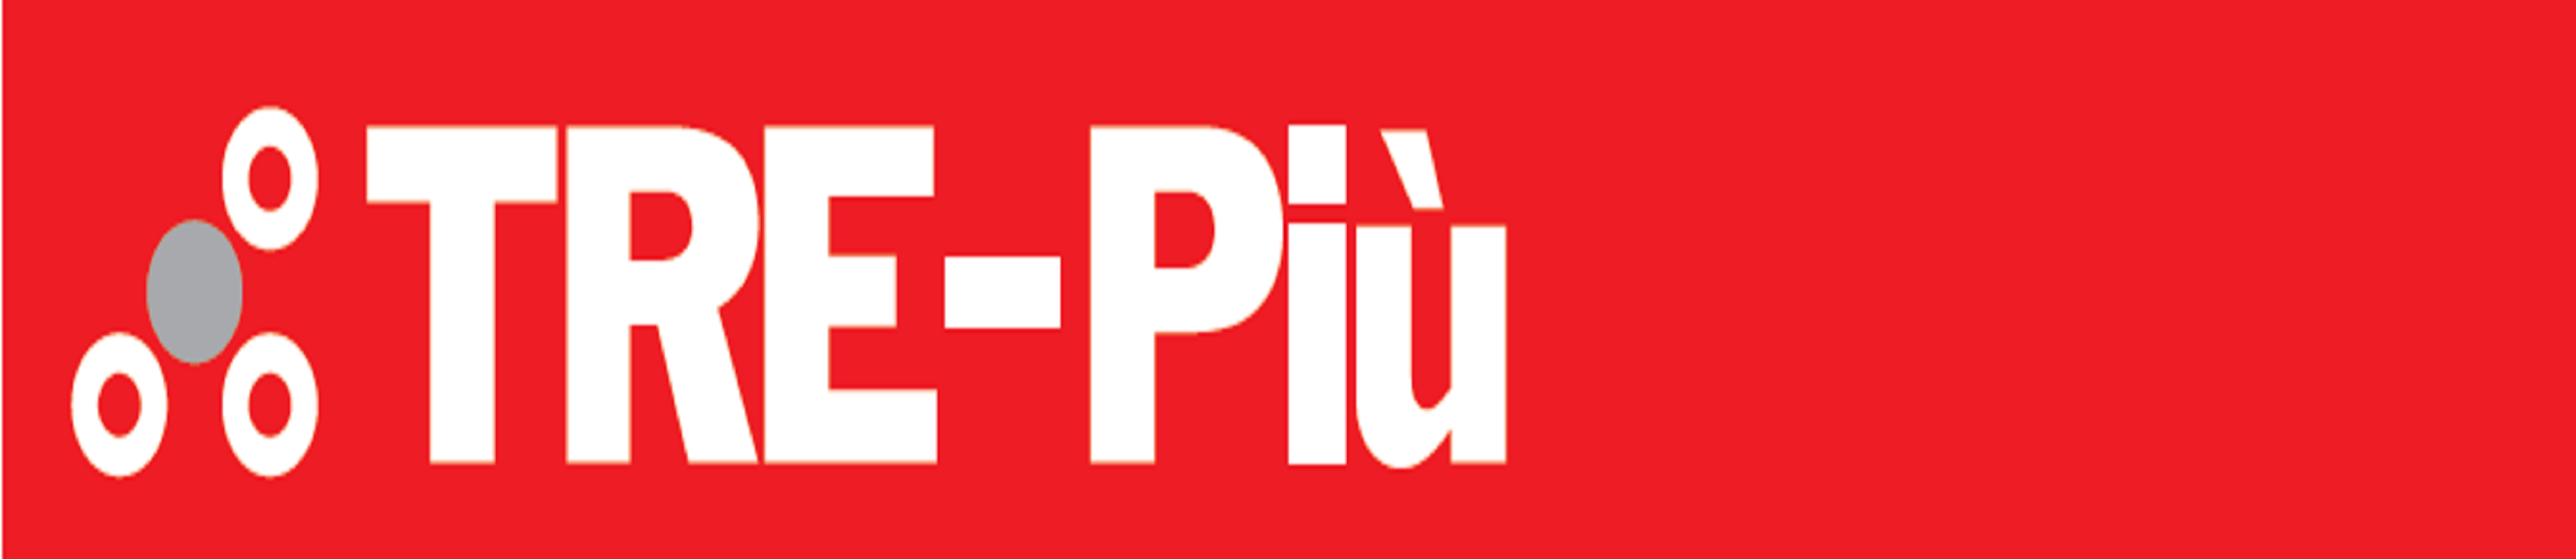 3pi_logo